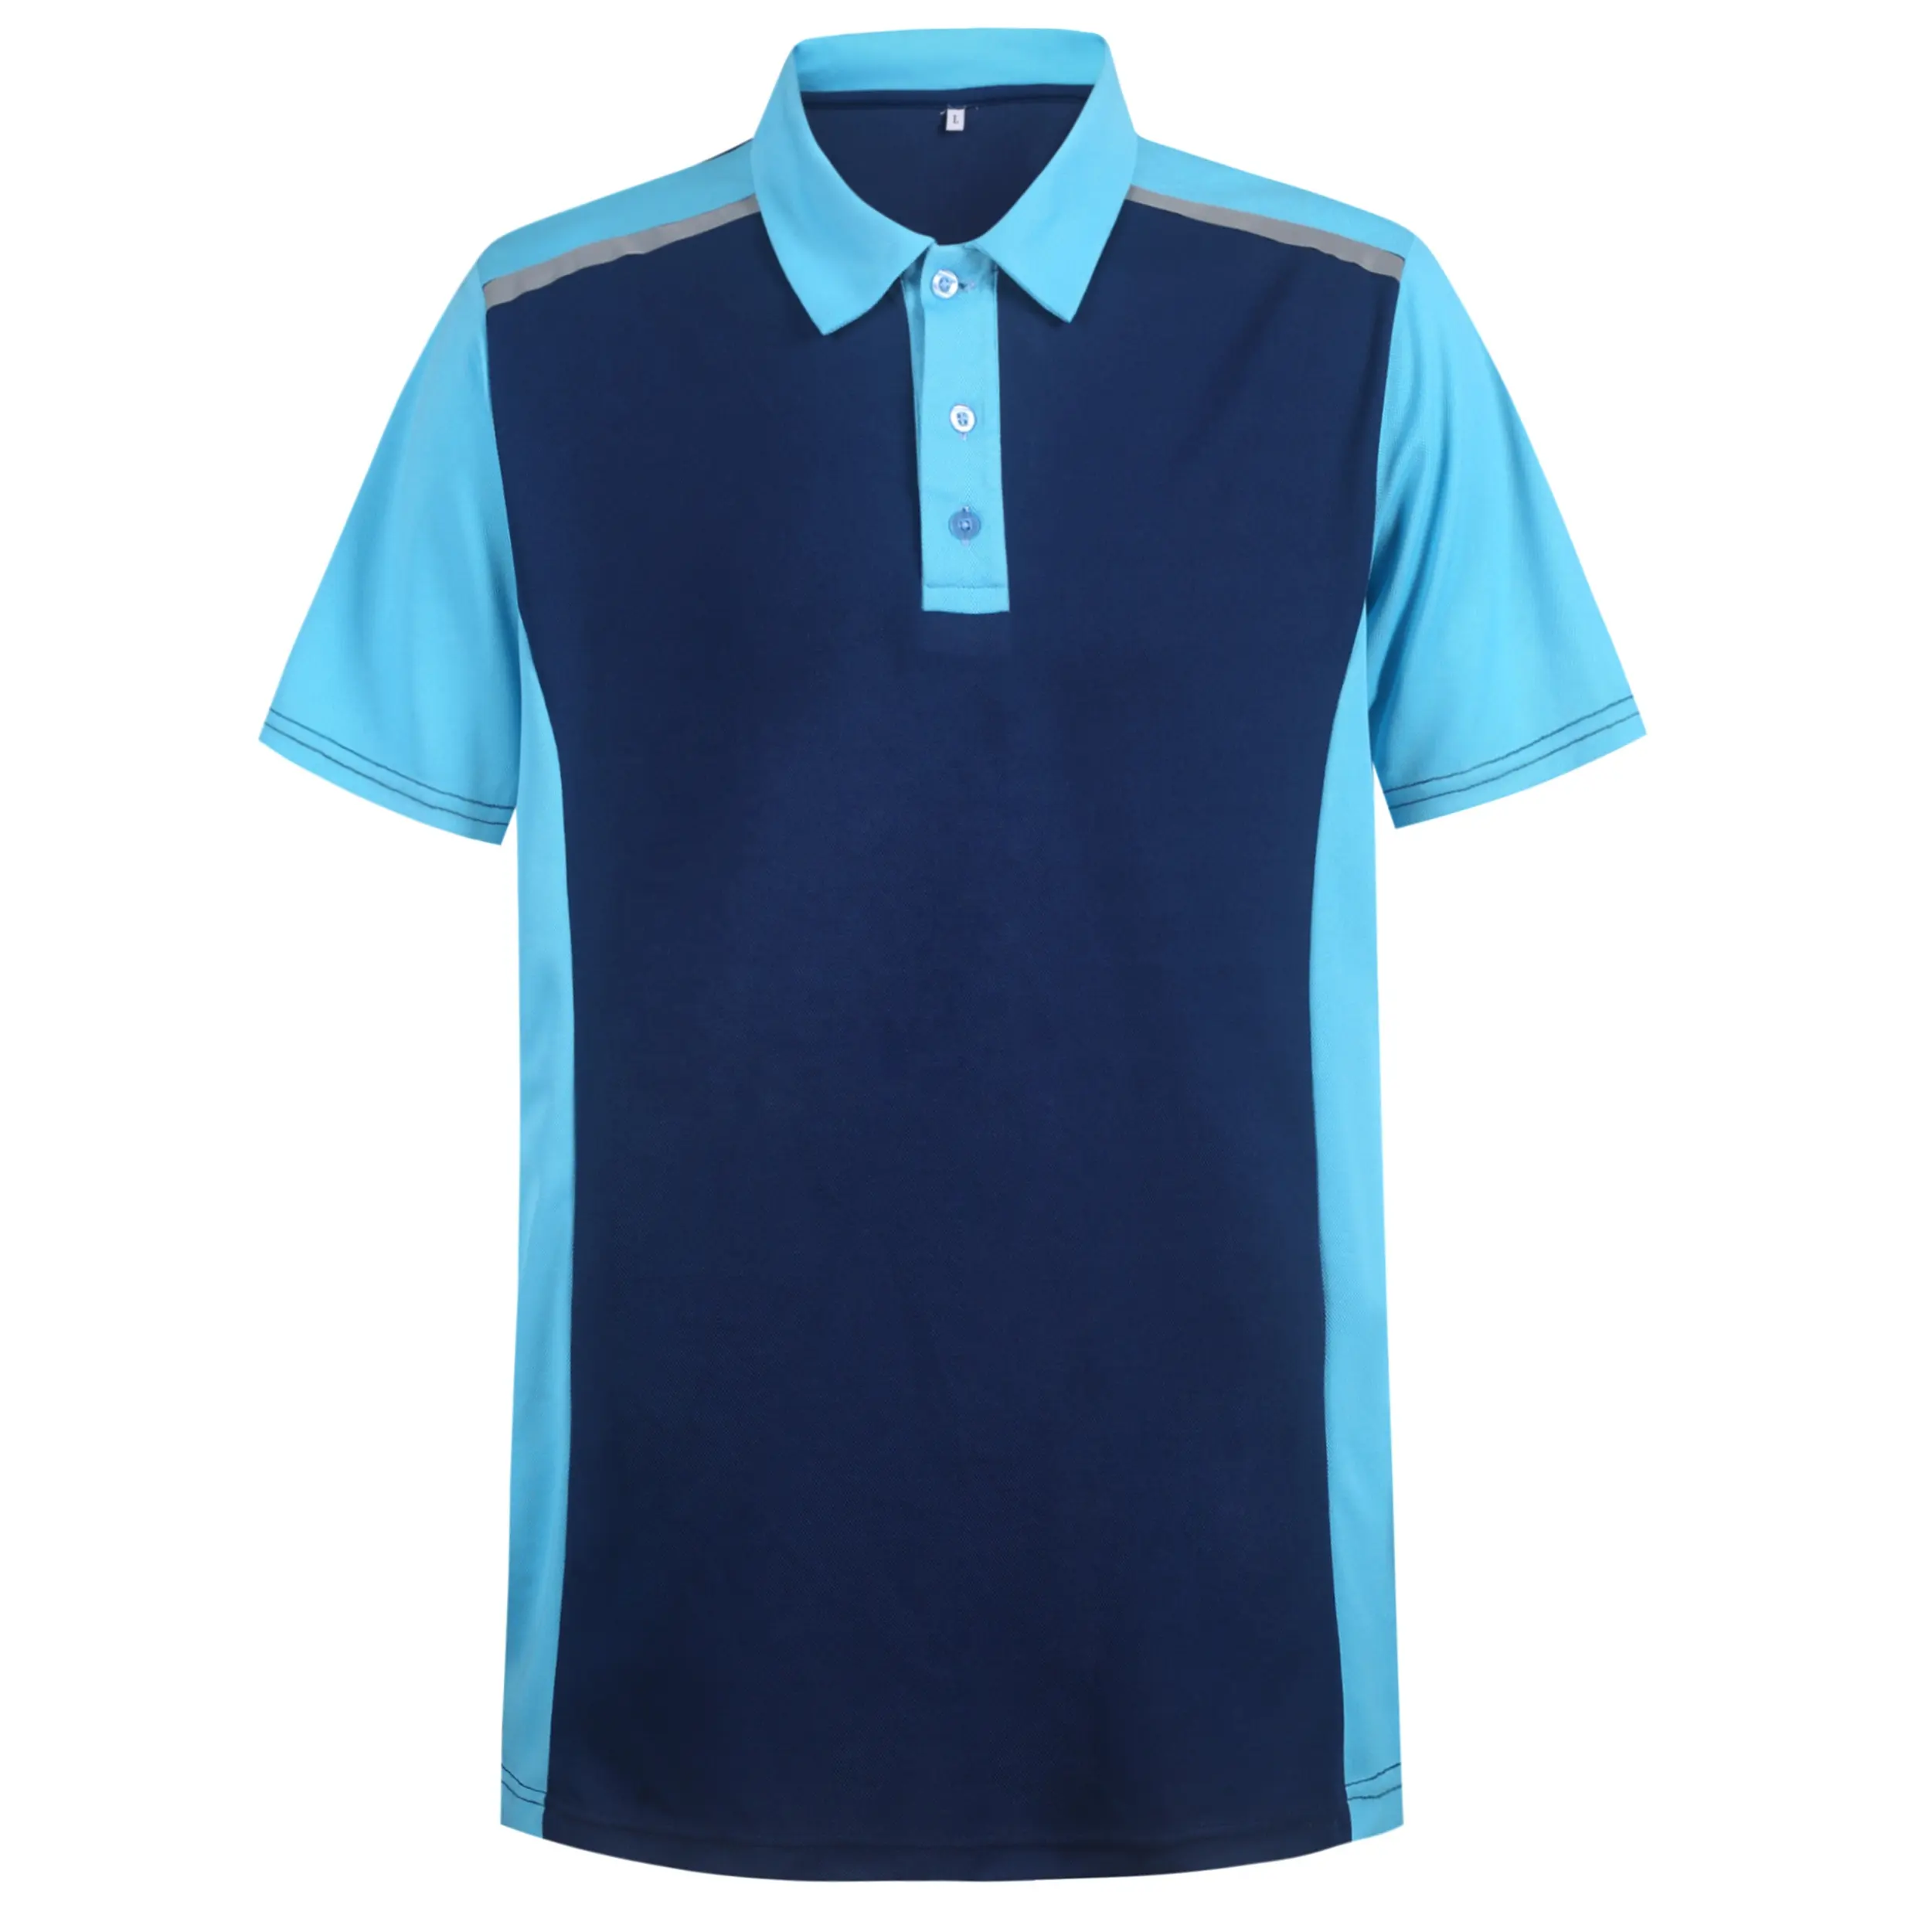 Logo personalizzato con abbigliamento campione polo da golf da uomo casual in cotone o poliestere traspirante uniforme aziendale bule